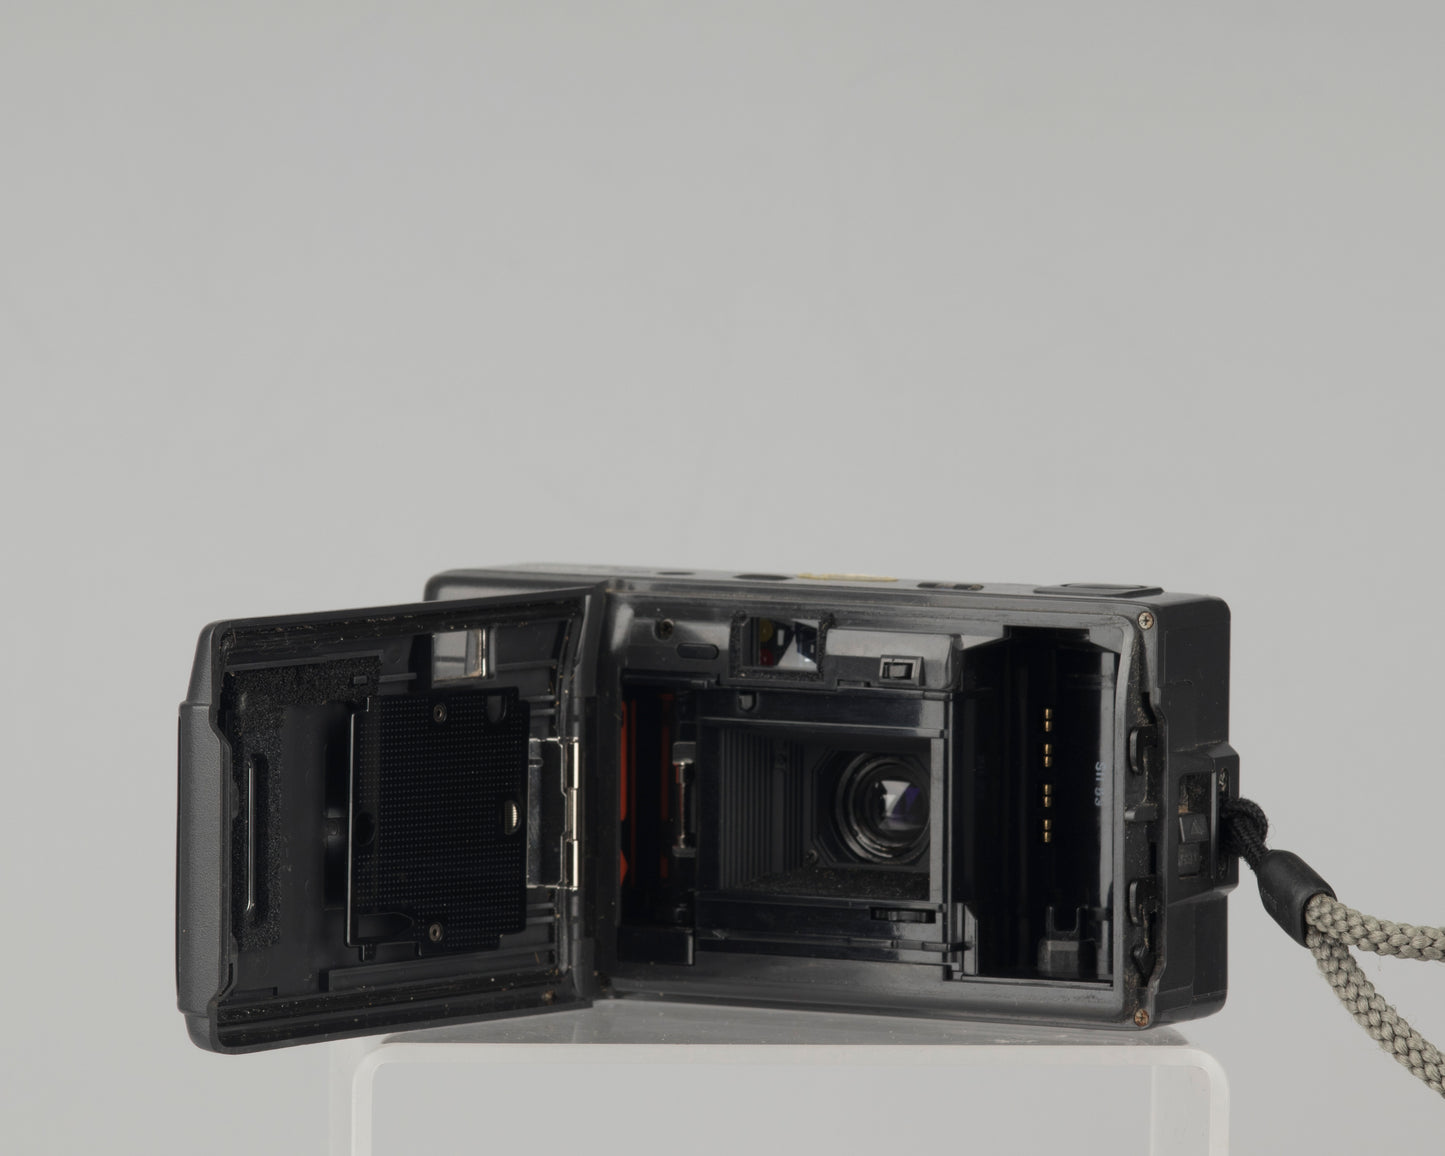 Olympus AF-1 (aka Infinity) 35mm film camera